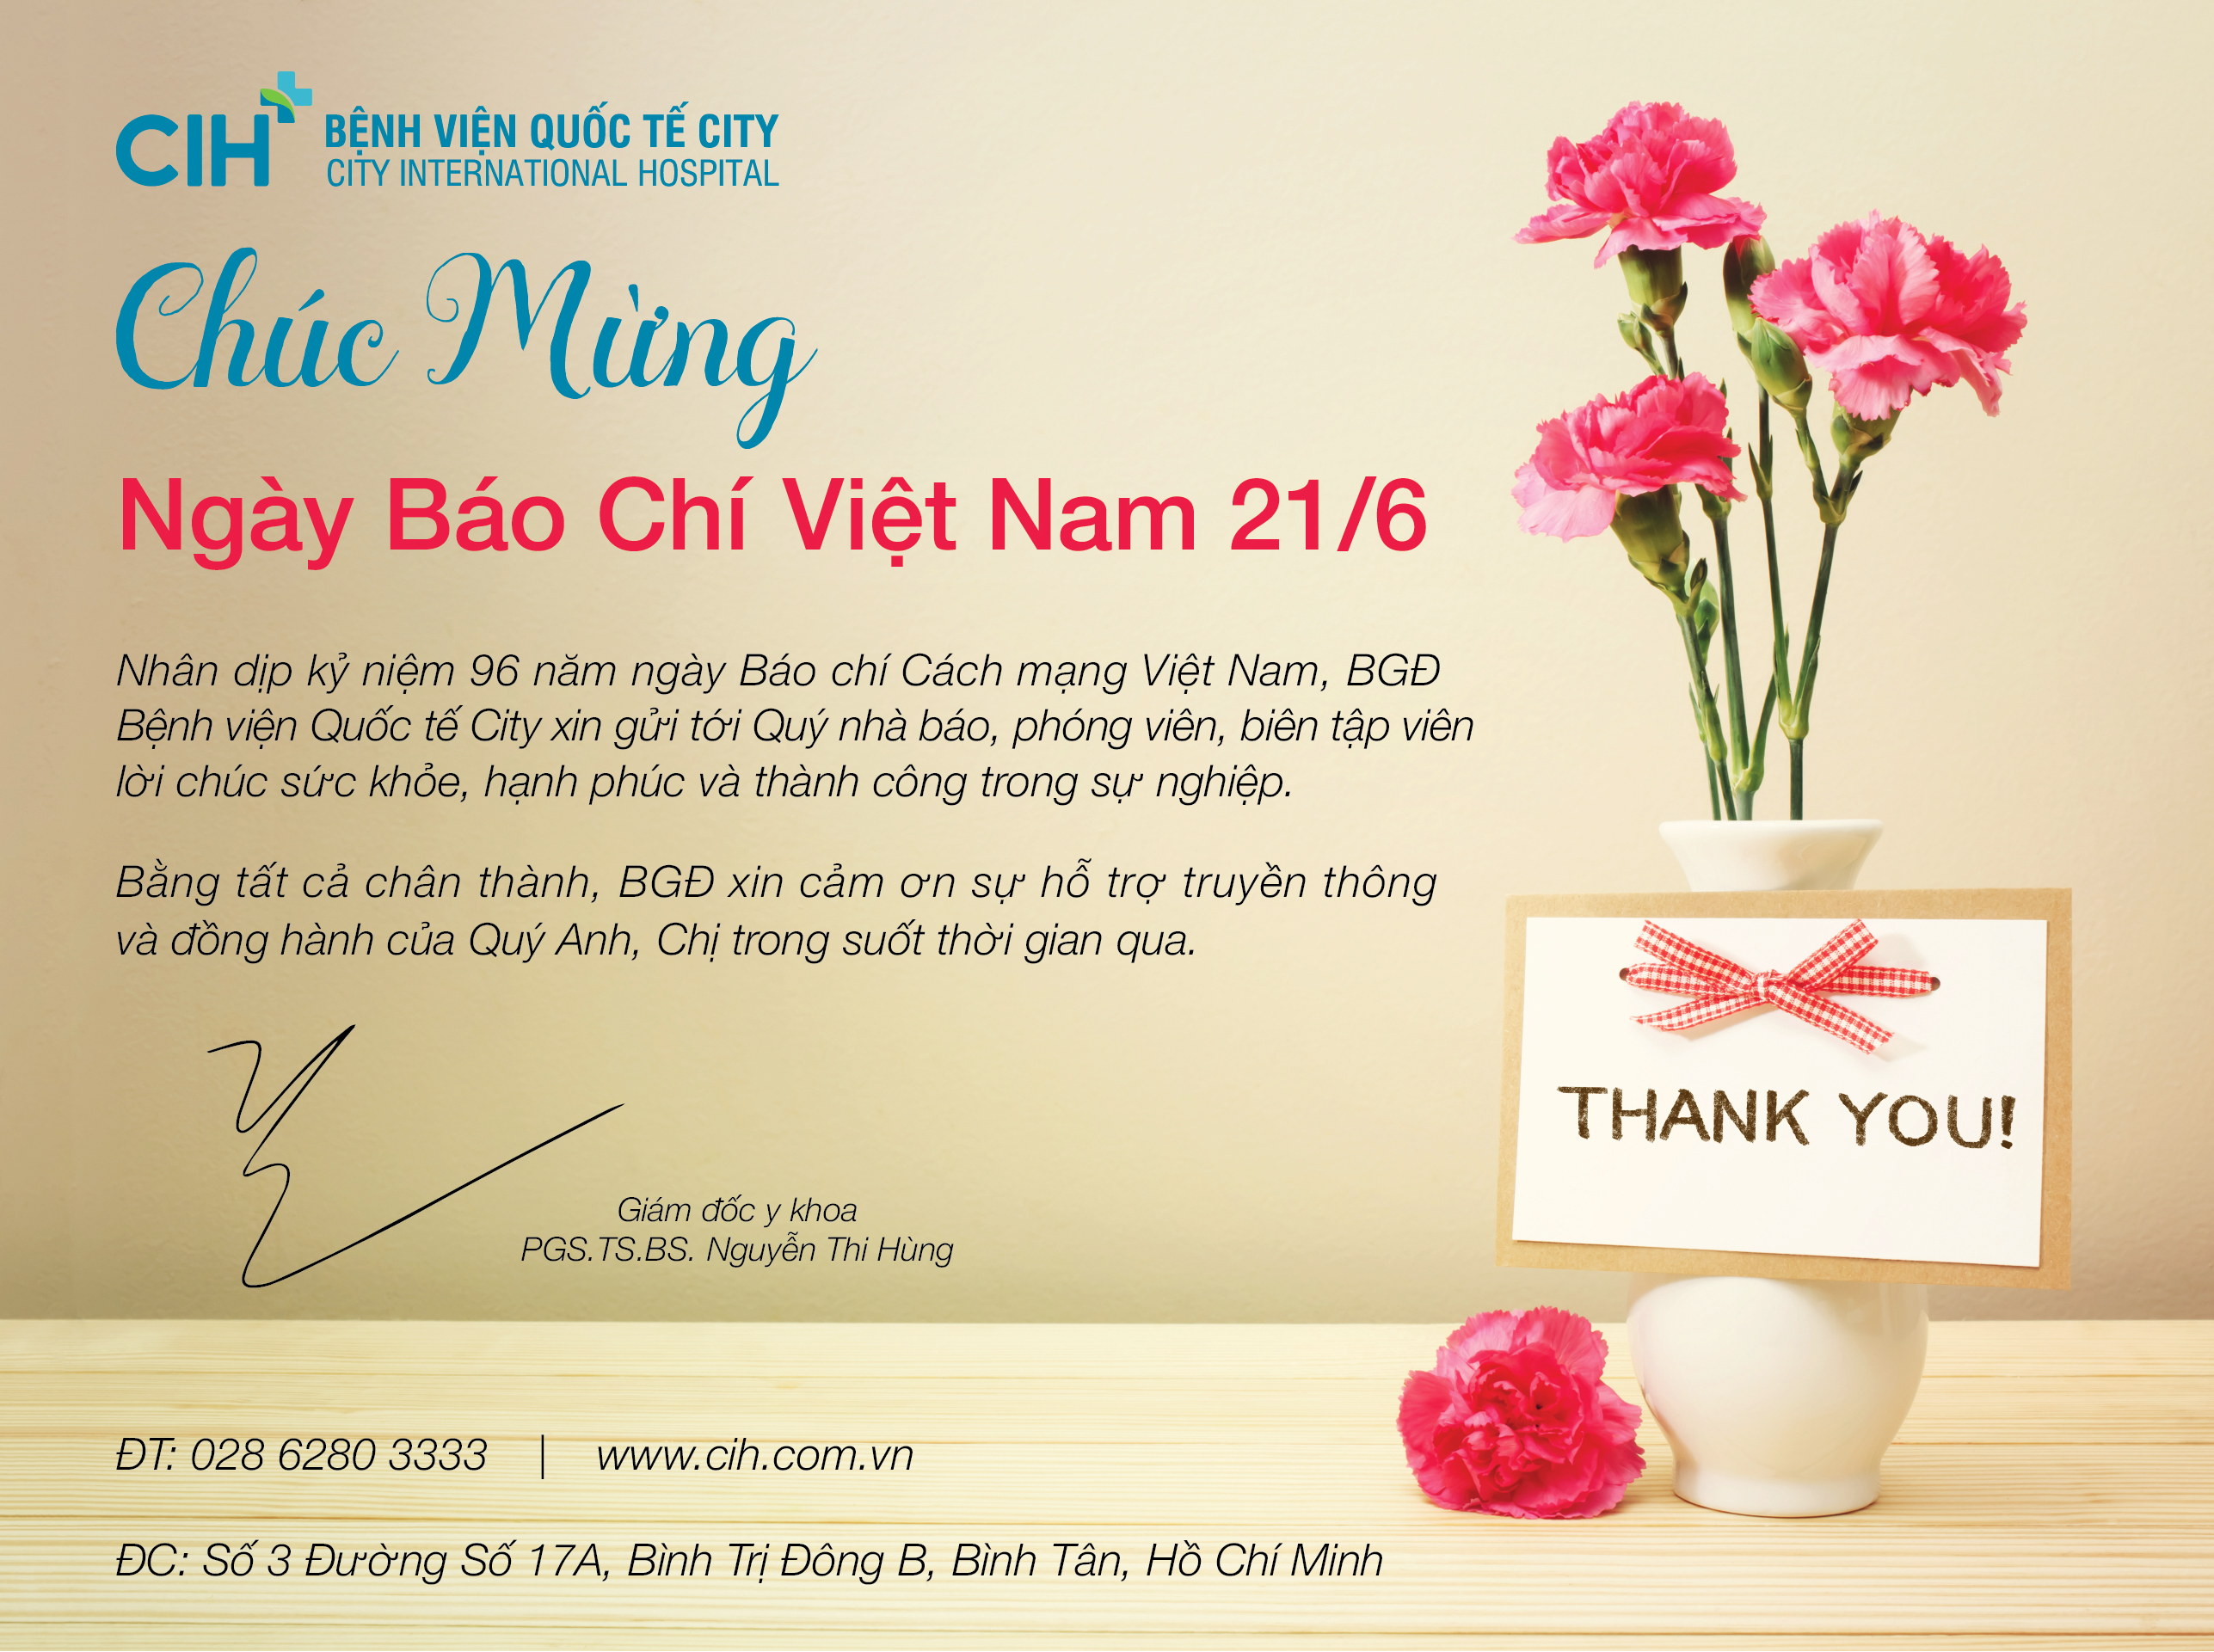 Chúc mừng ngày Báo chí cách mạng Việt Nam